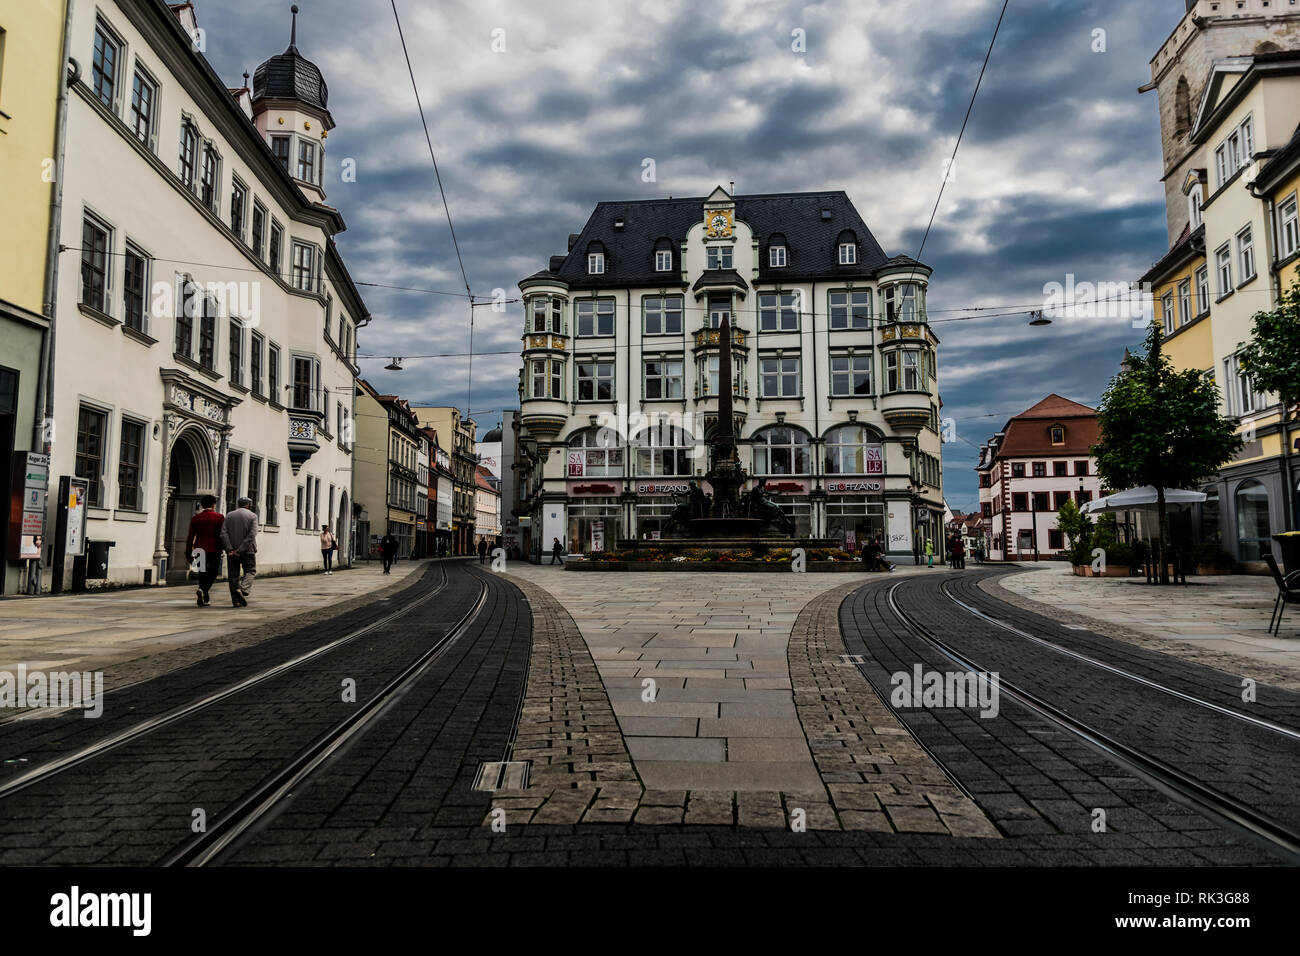 Erfurt, Germania - 07 26 2017: turisti camminando attraverso le strade lastricate del centro storico Foto Stock